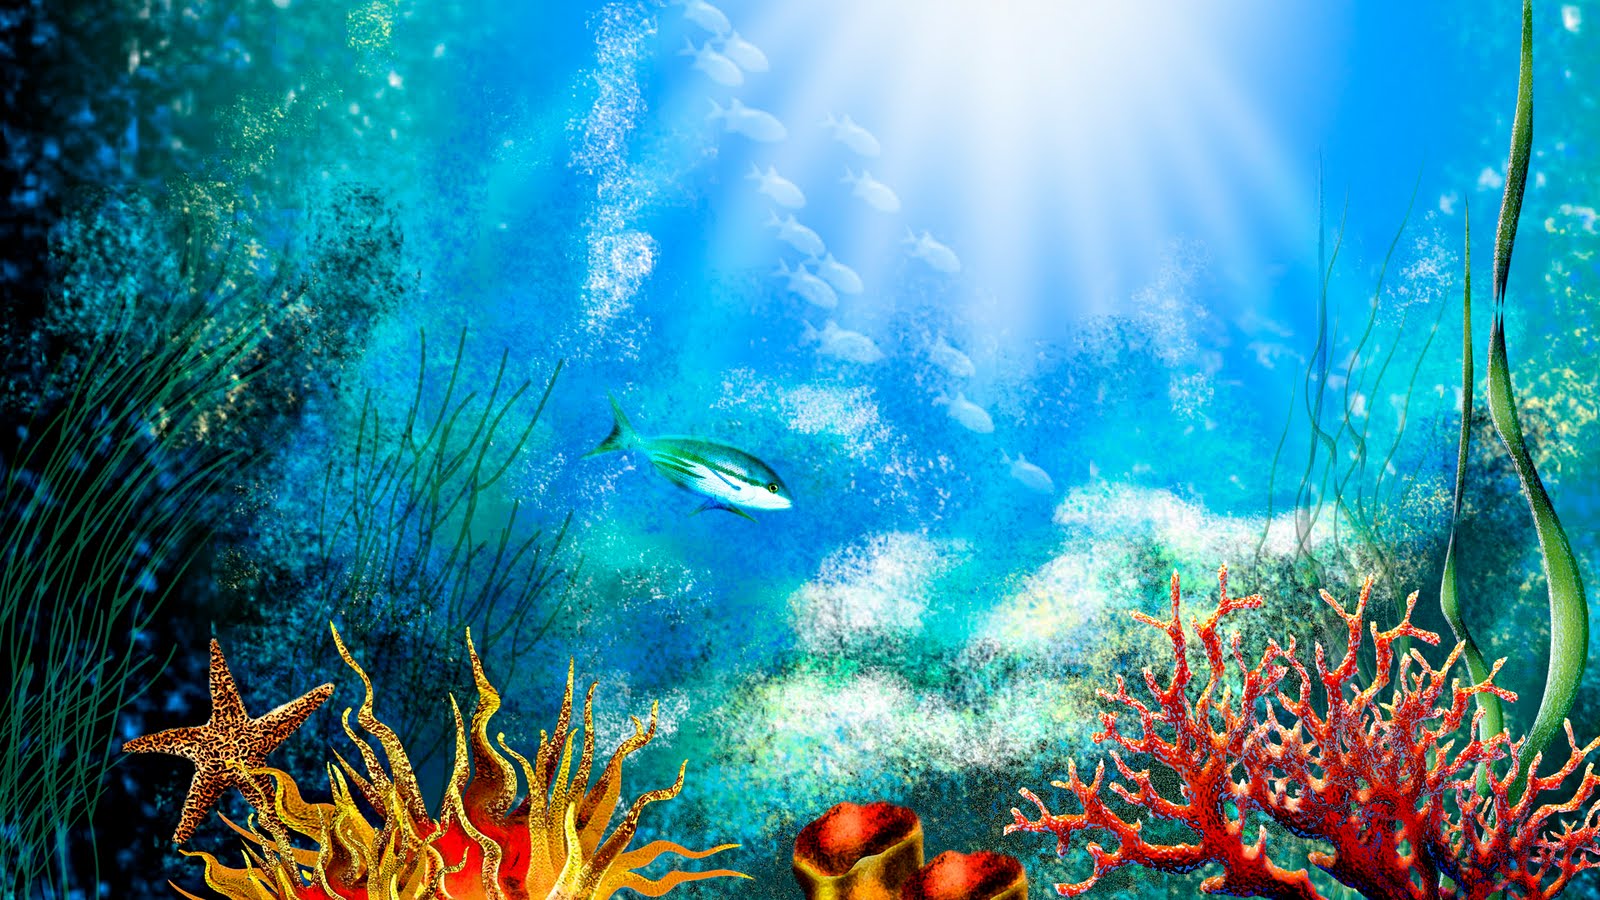 acquario wallpaper hd,subacqueo,biologia marina,barriera corallina,pesci di barriera corallina,scogliera